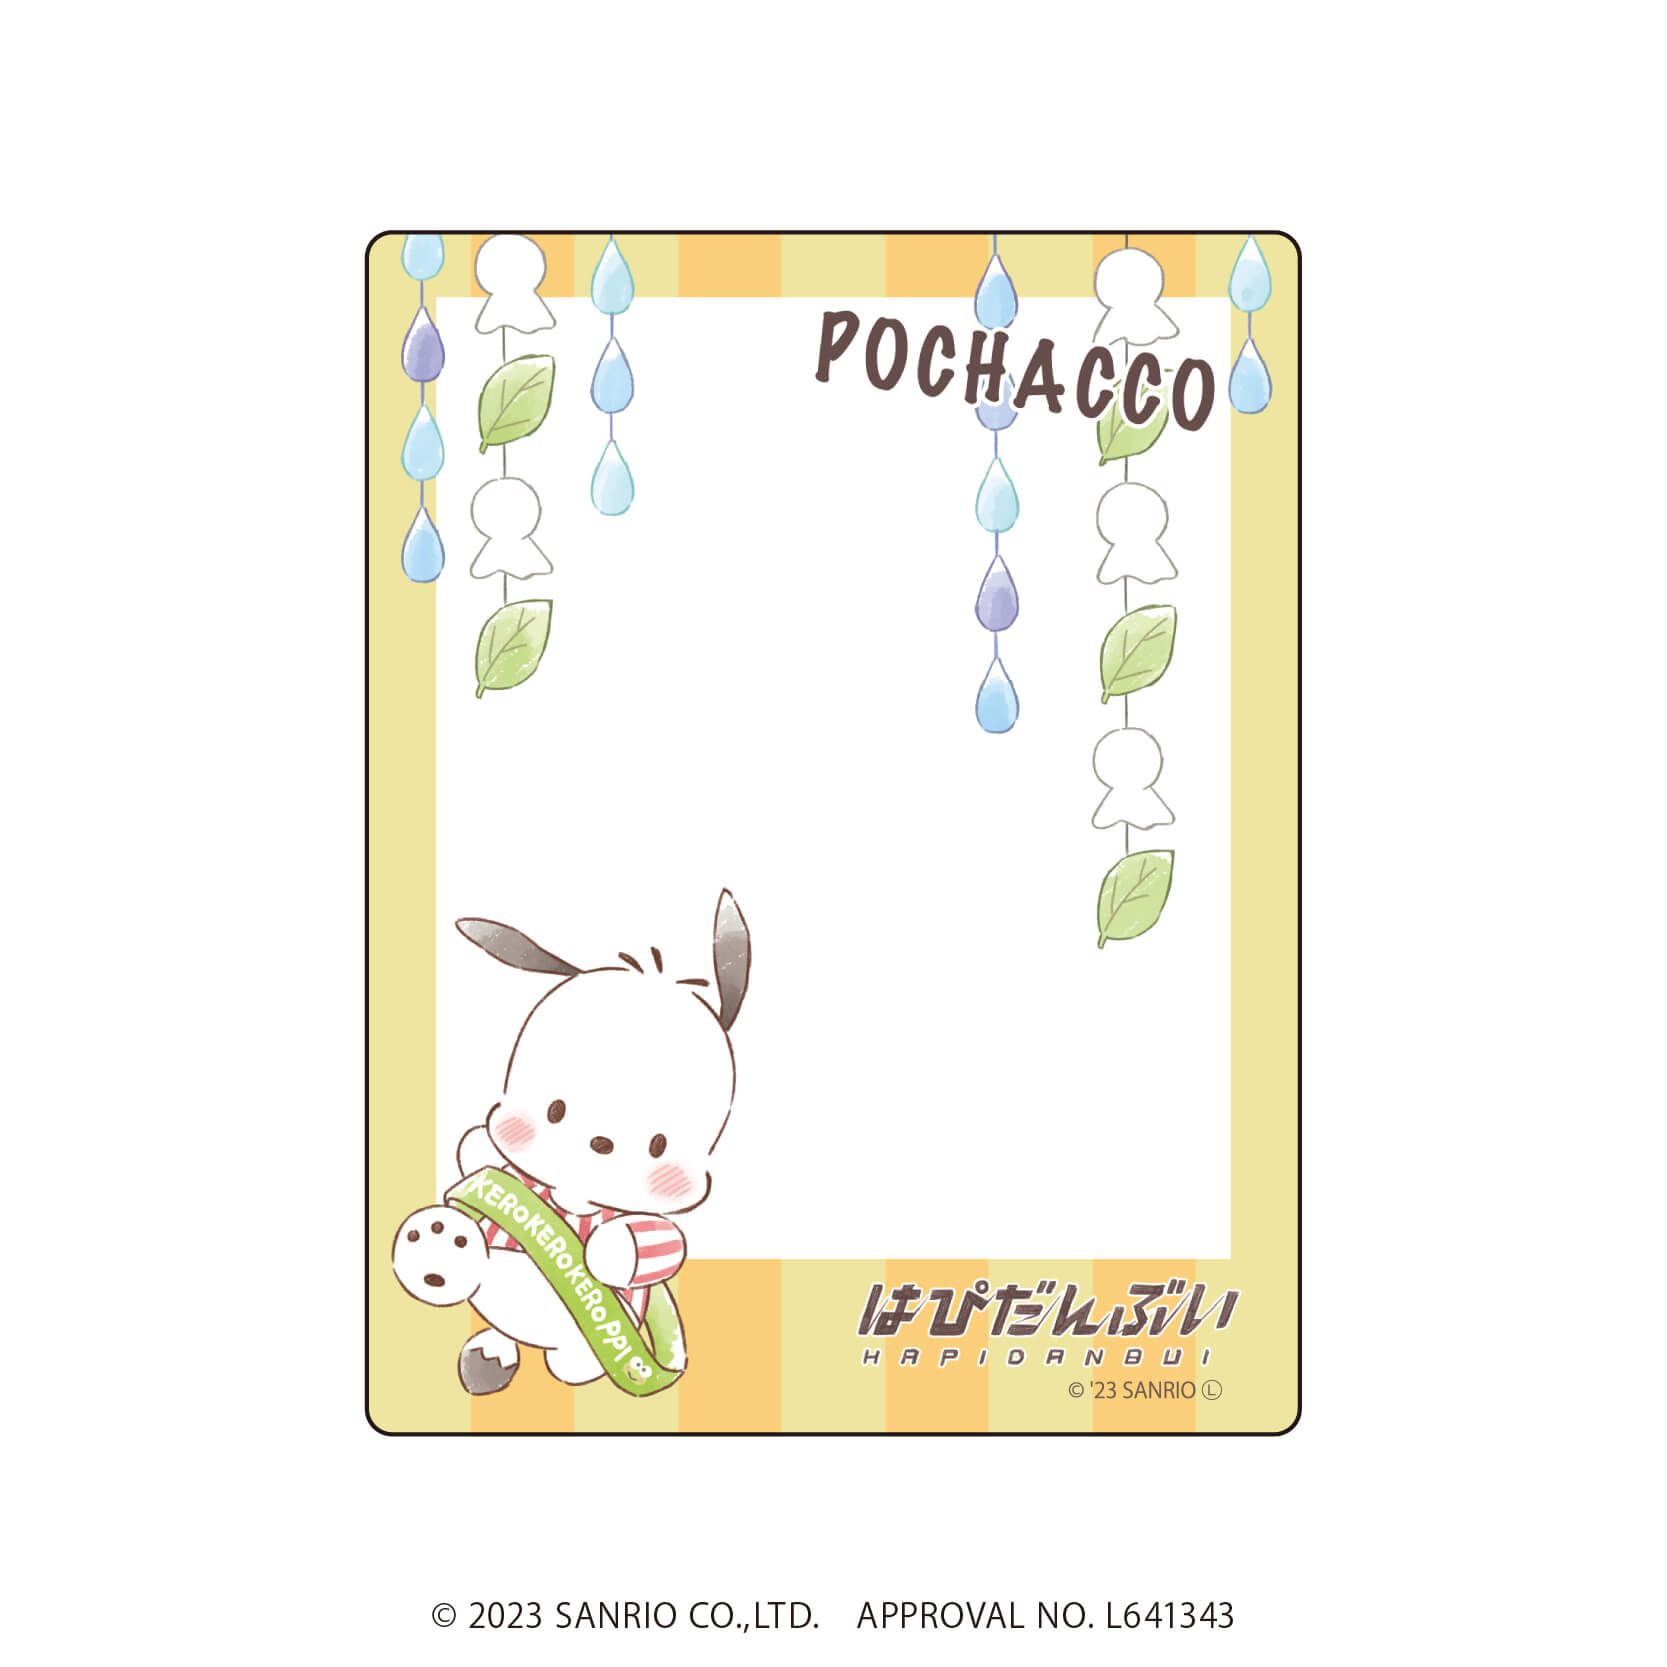 アクリルカード「はぴだんぶい」05/コンプリートBOX(全6種)(グラフアートイラスト)